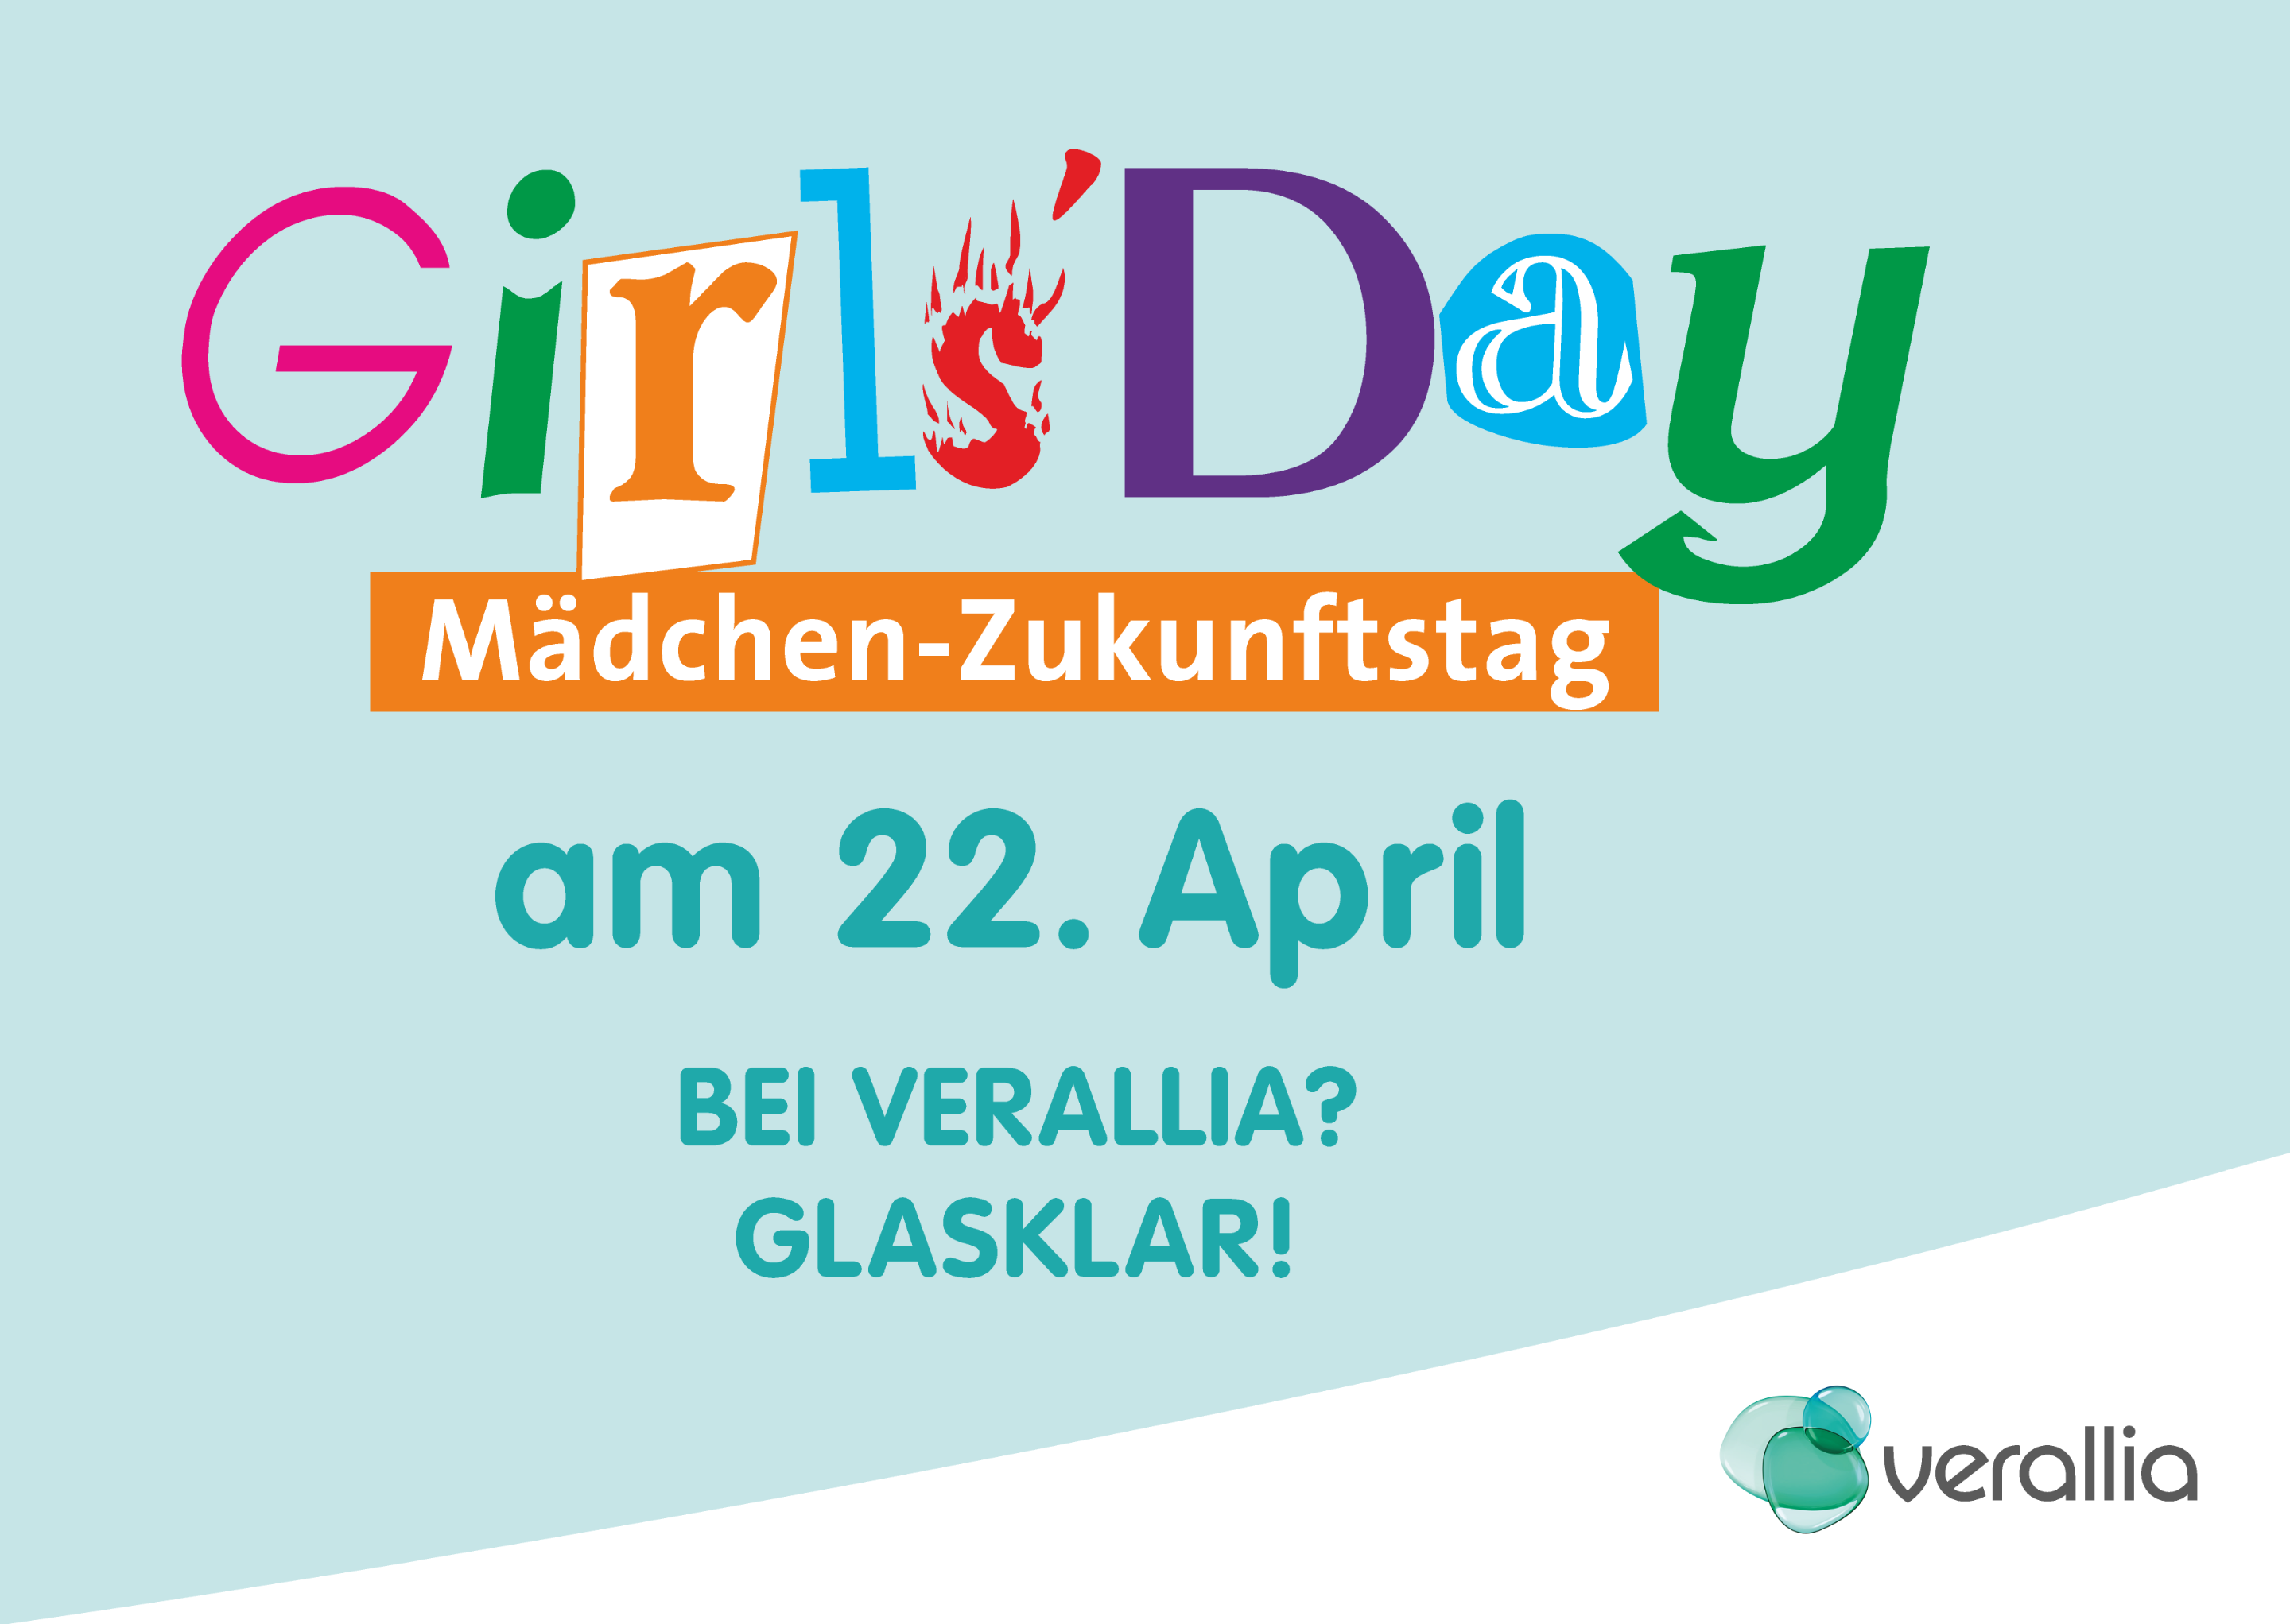 Girls Day